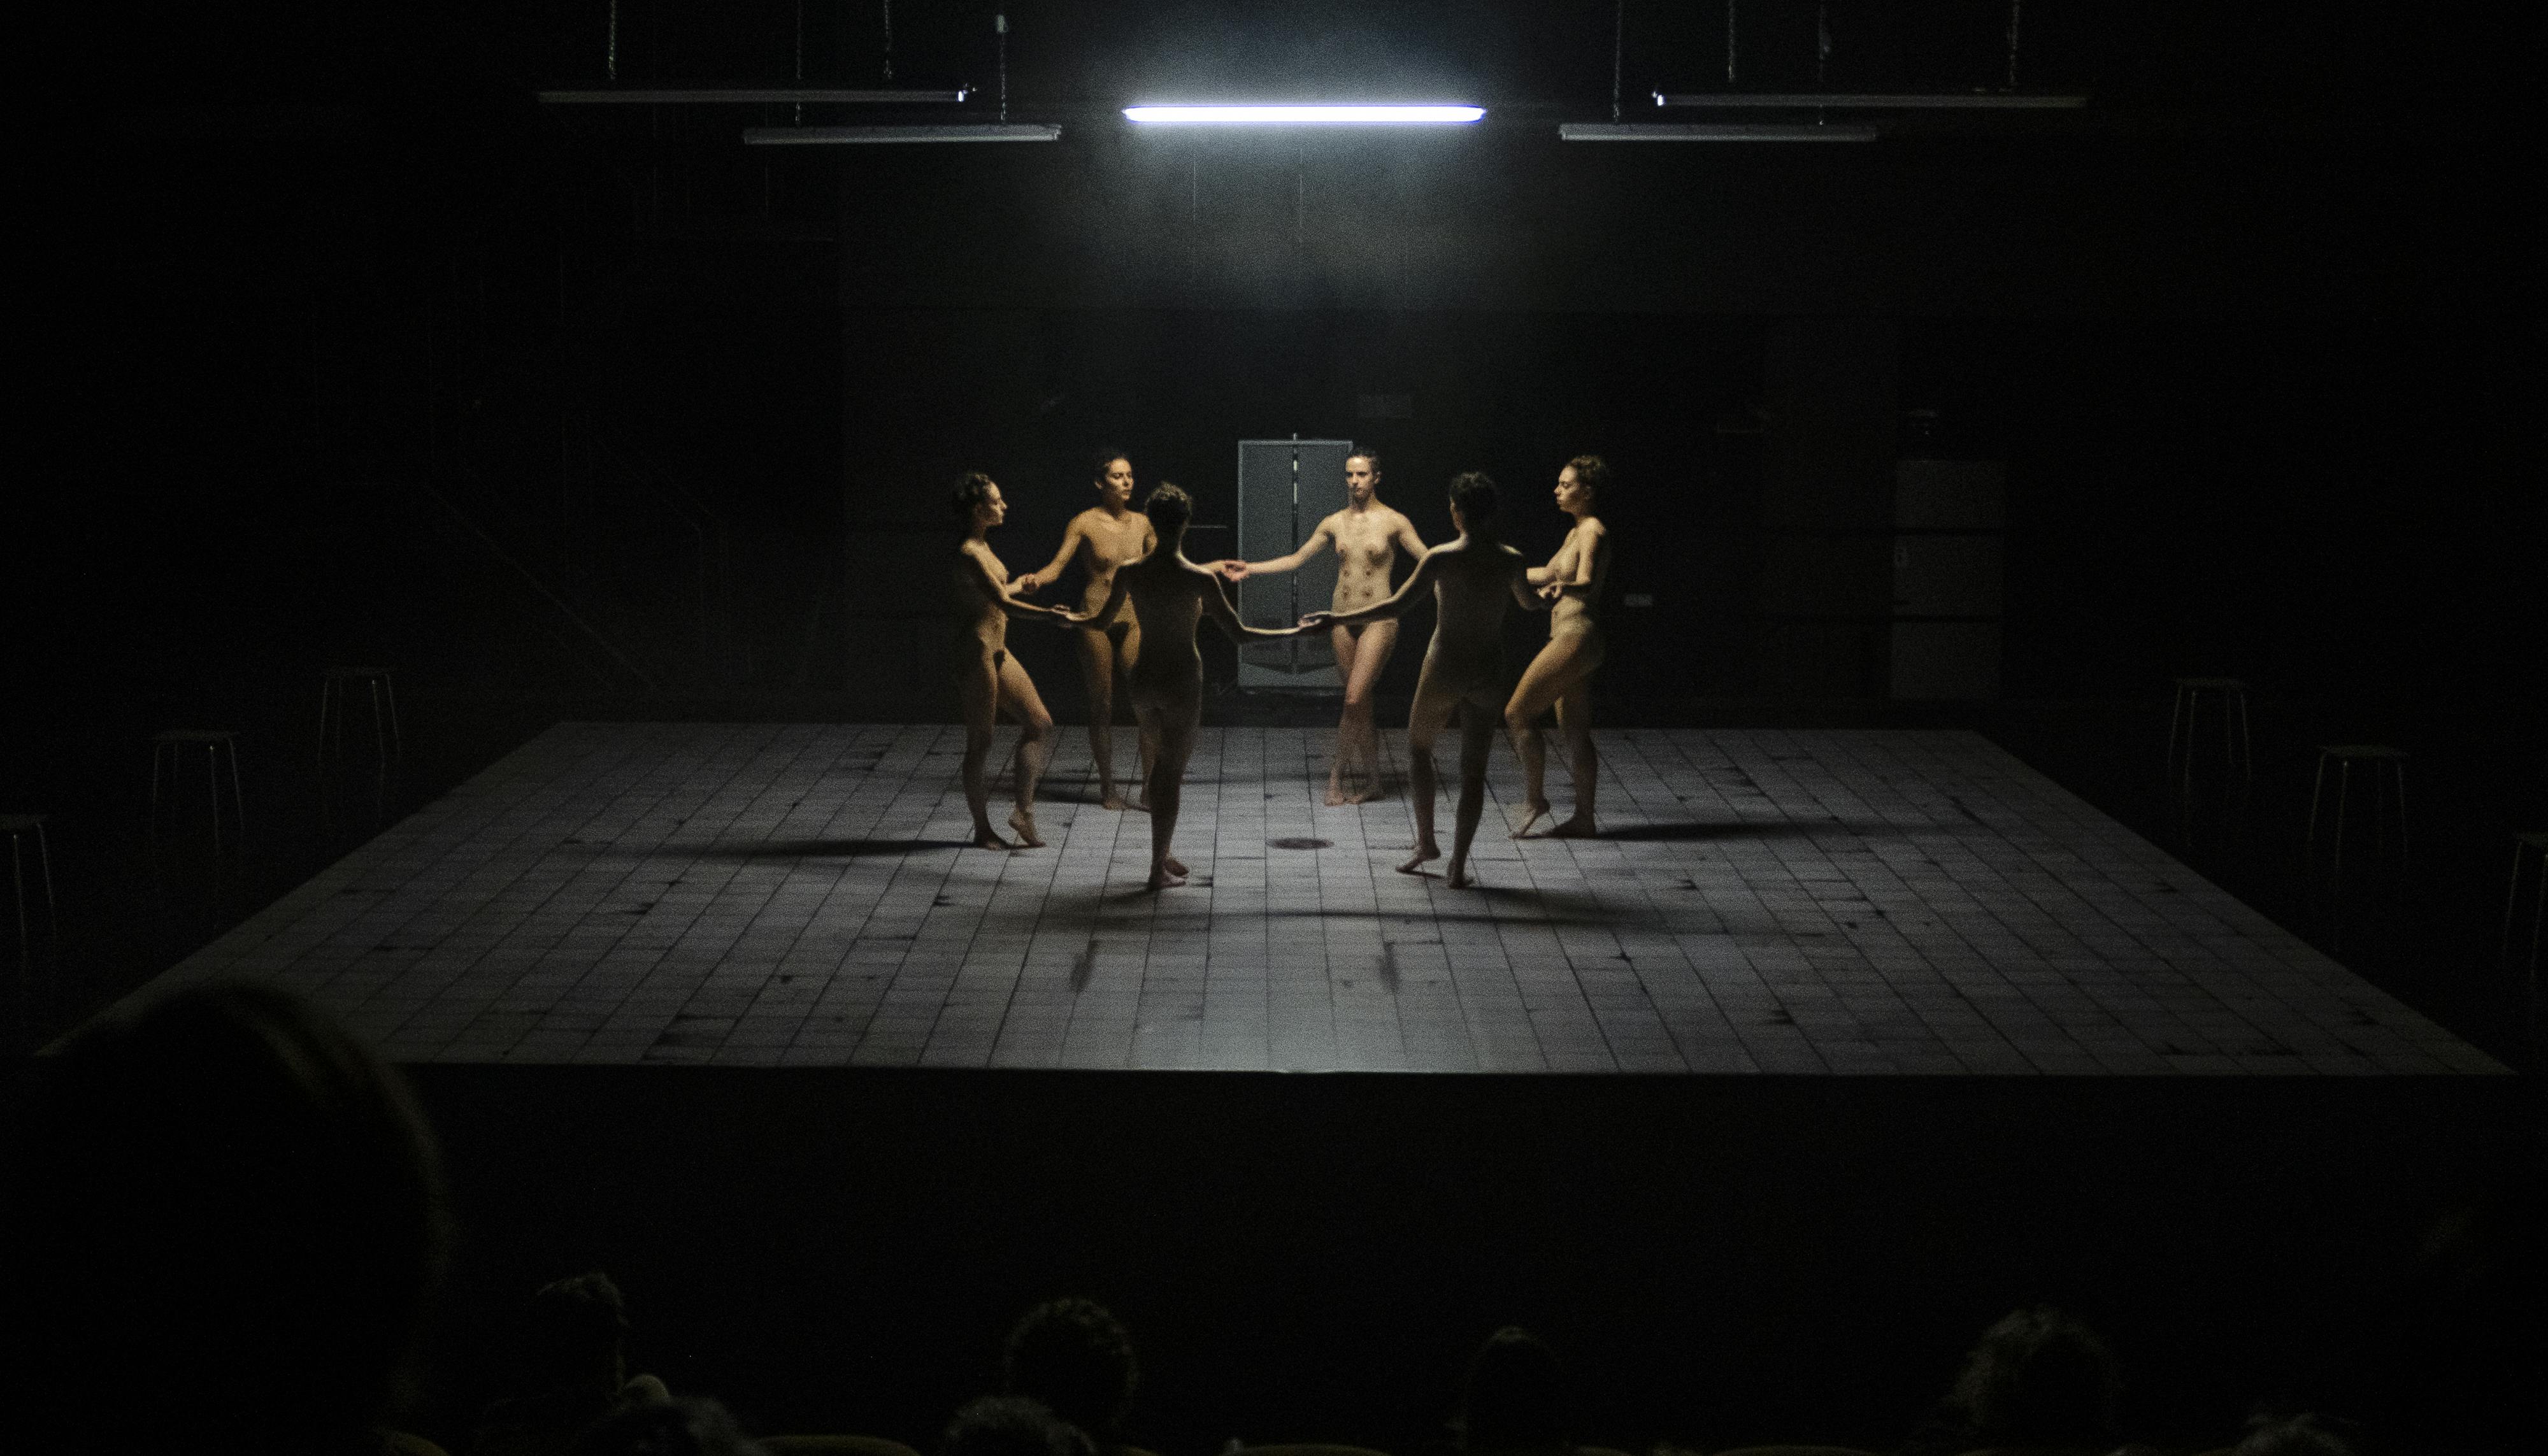 Sei danzatrici, apparentemente nude, formano un girotondo sul palcoscenico vuoto. Le illumina una luce a neon dall'alto.